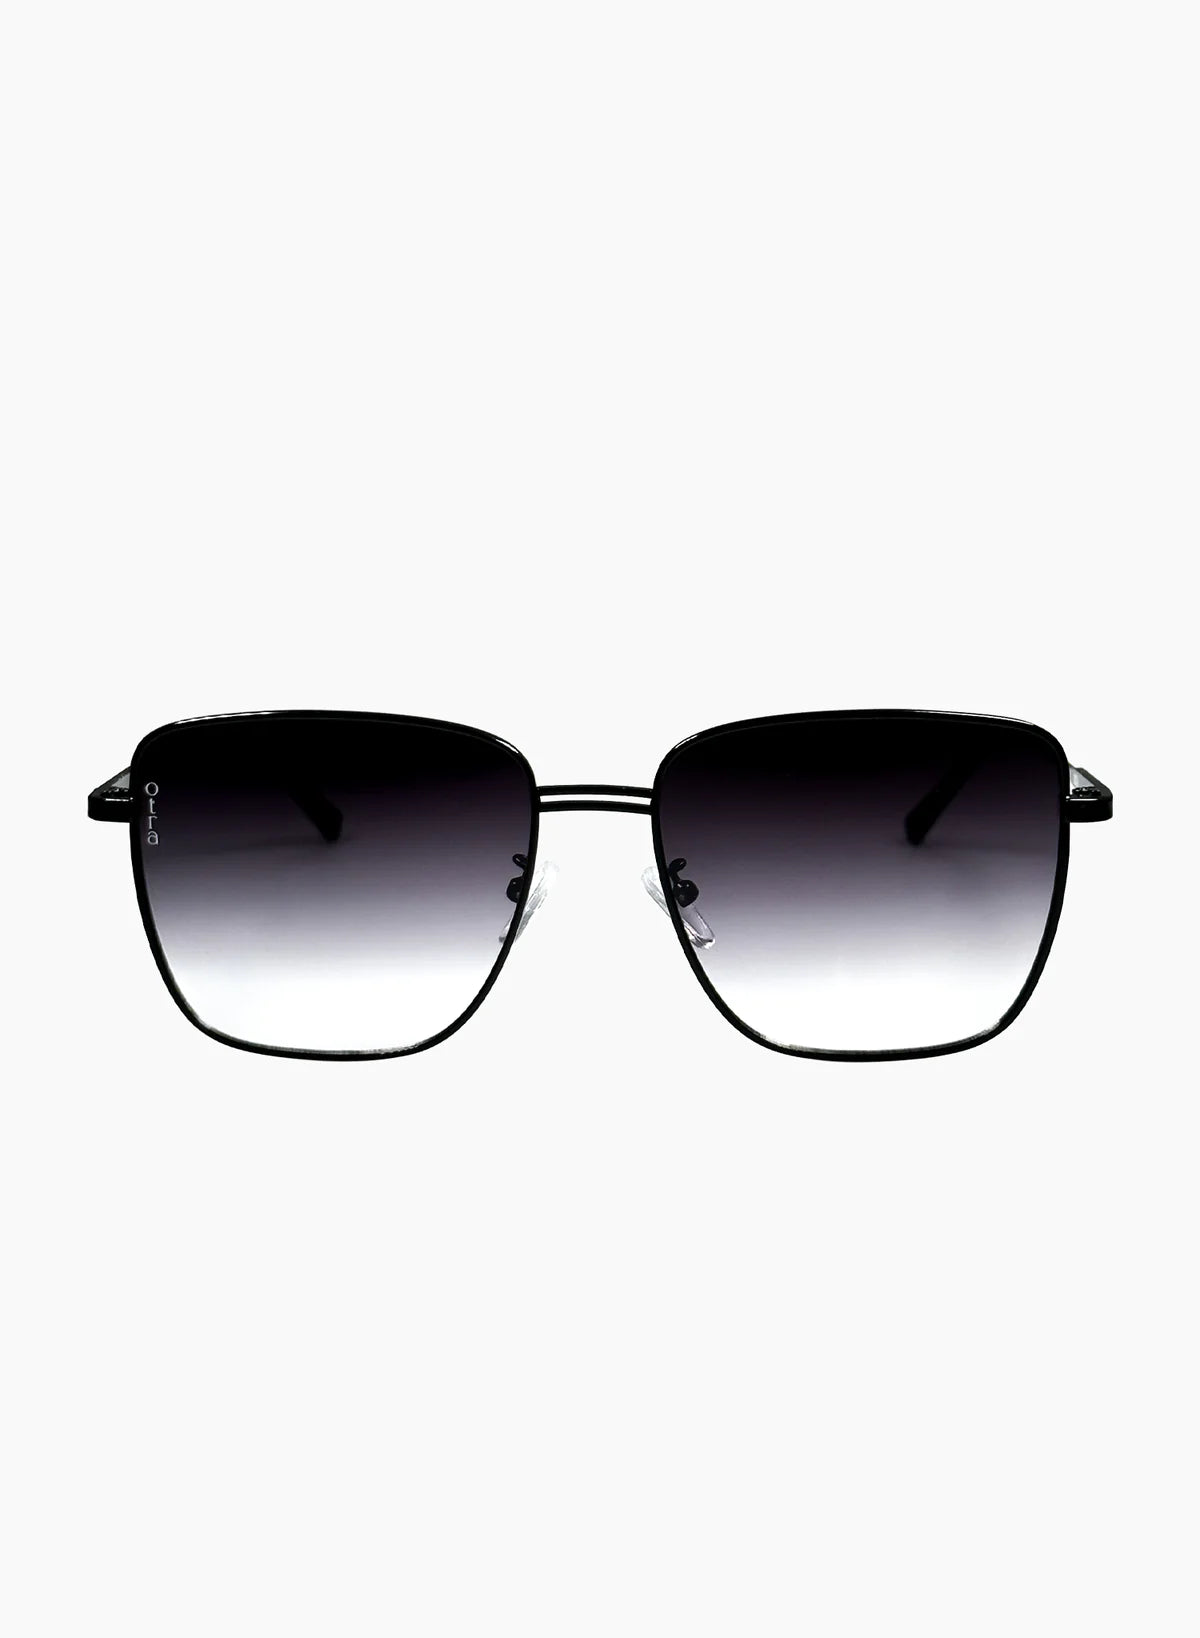 Rita Sunglasses Black, Sunglass Acc by Otra | LIT Boutique